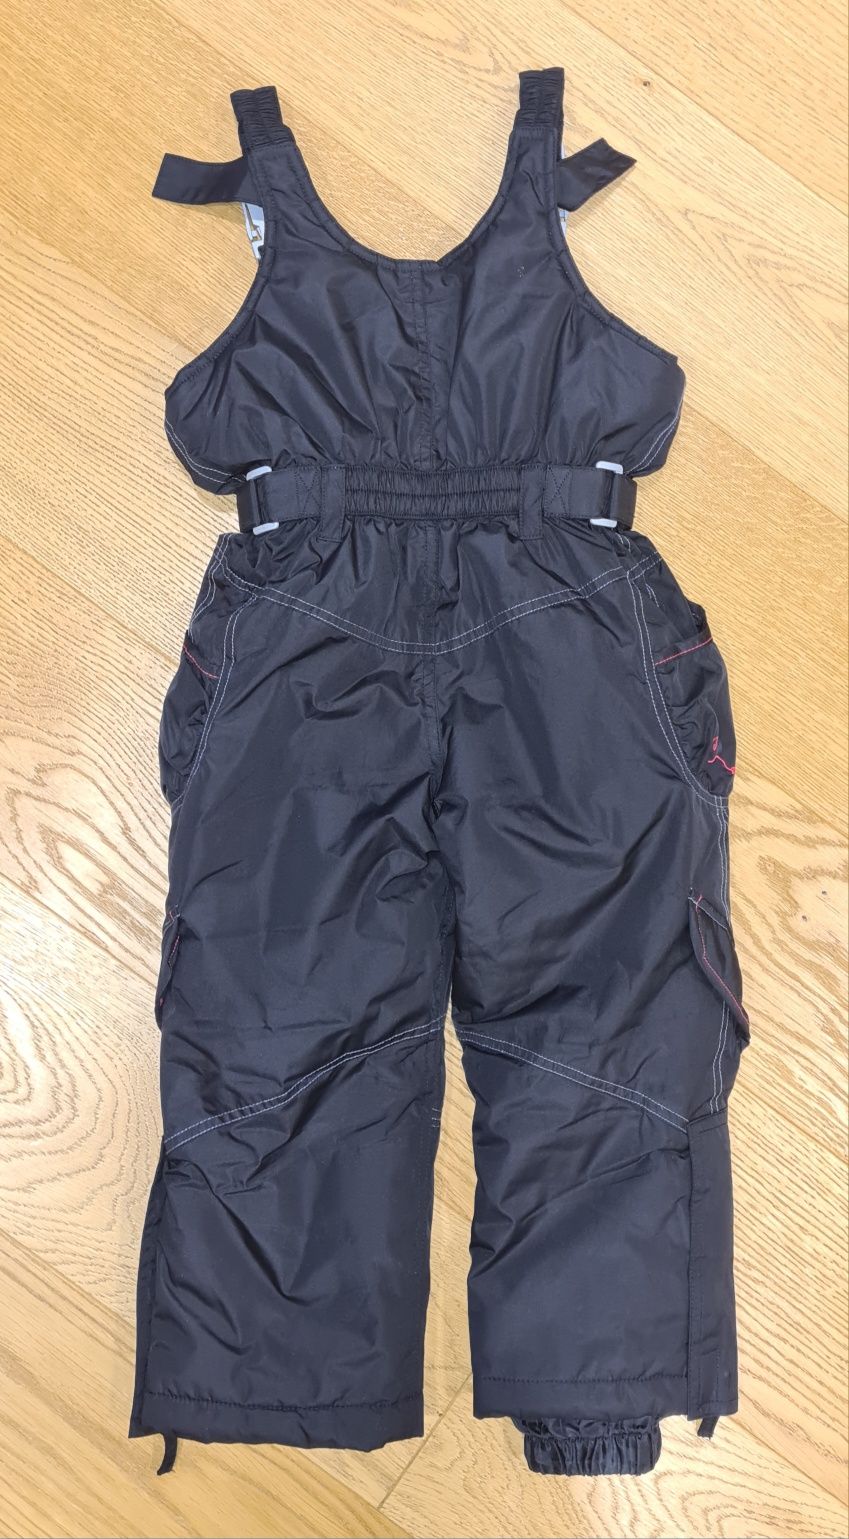 Spodnie zimowe po jednym dziecku roz 104 firmy Peak Mountain